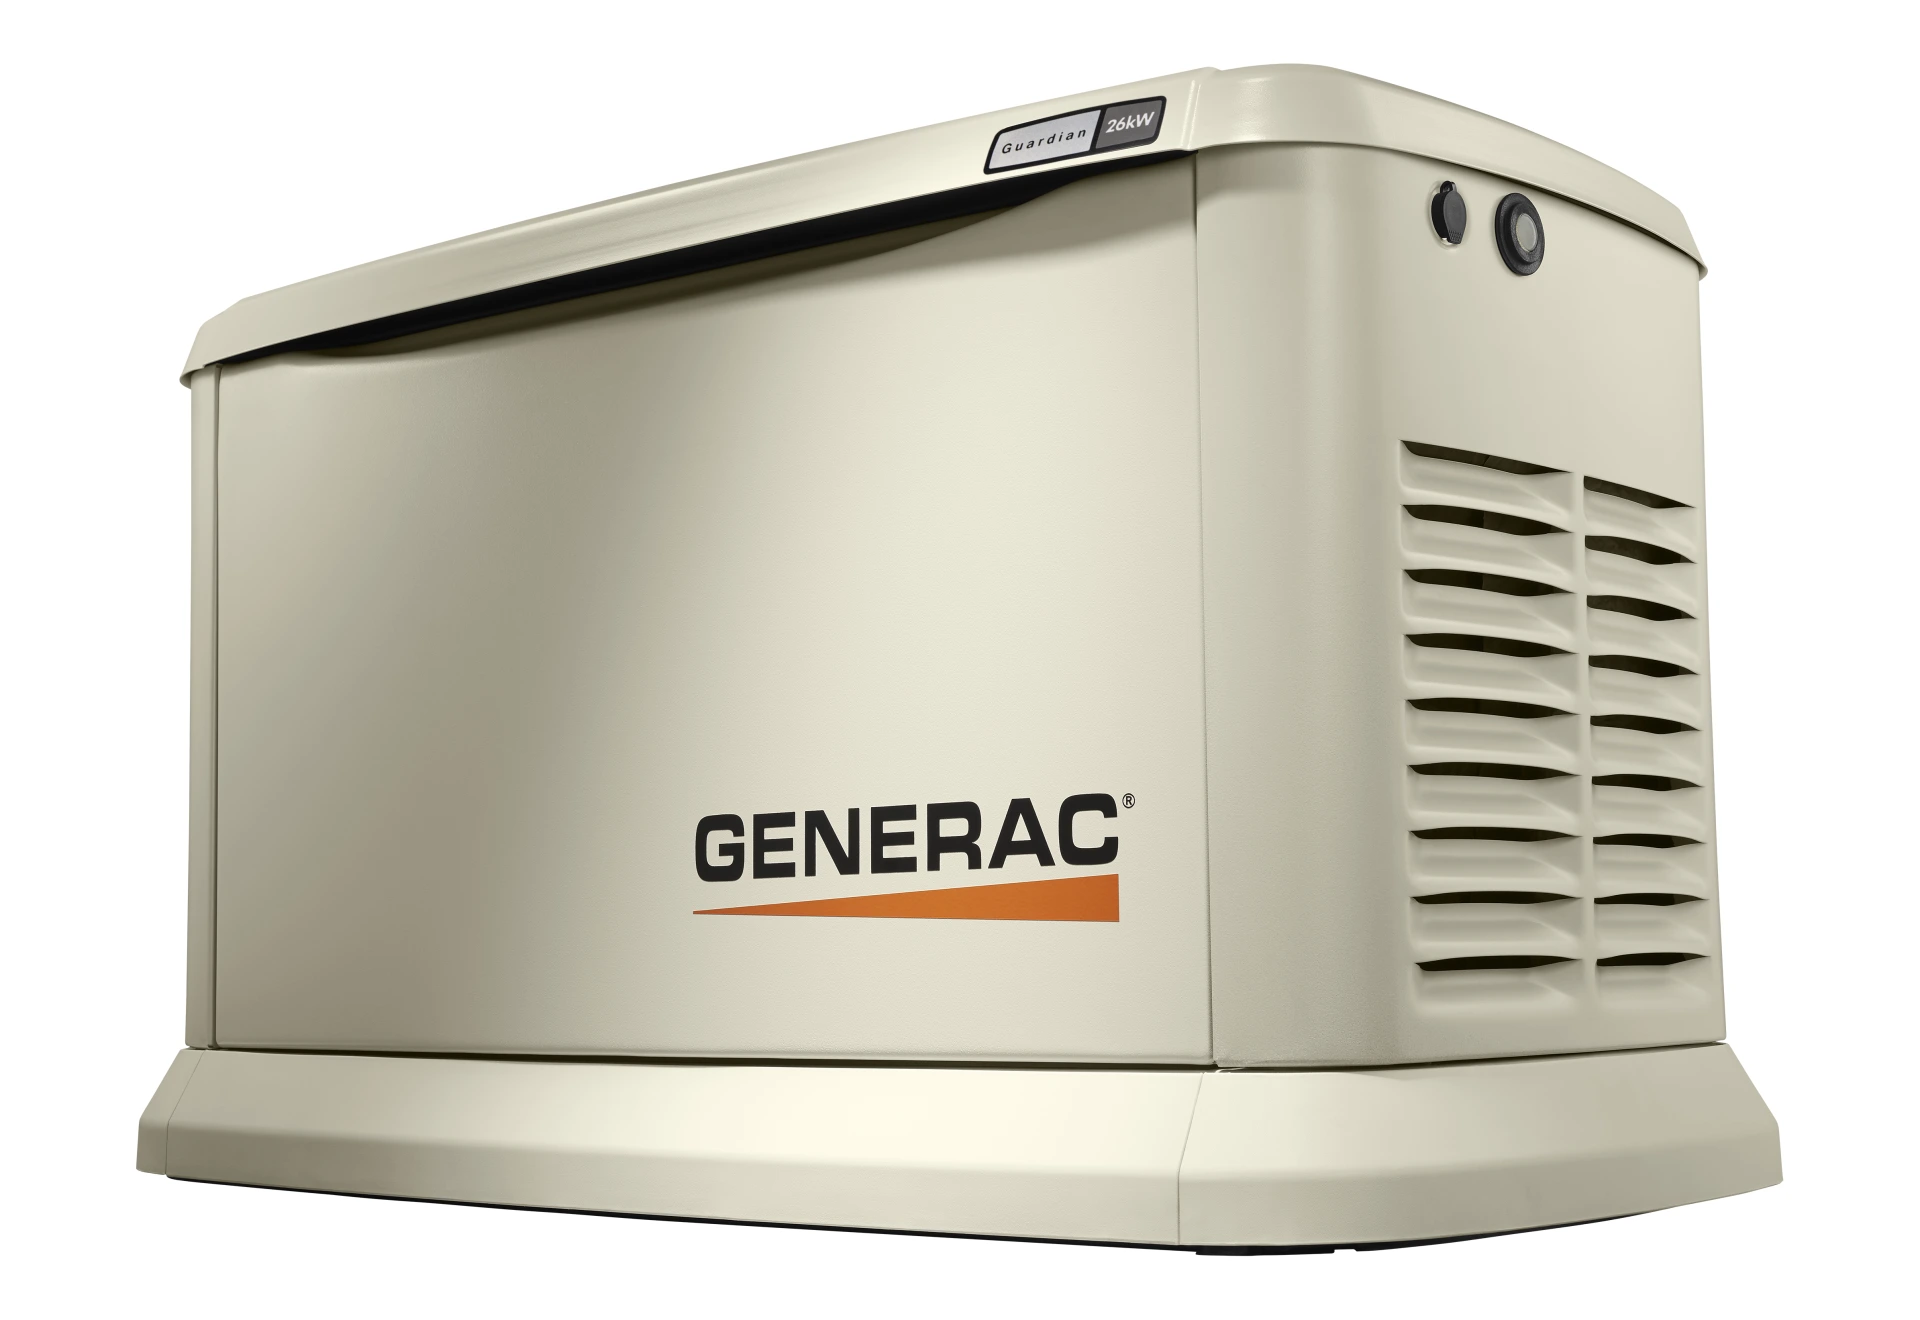 Generac Generator Fuel Consumption Chart & Calculator All Models